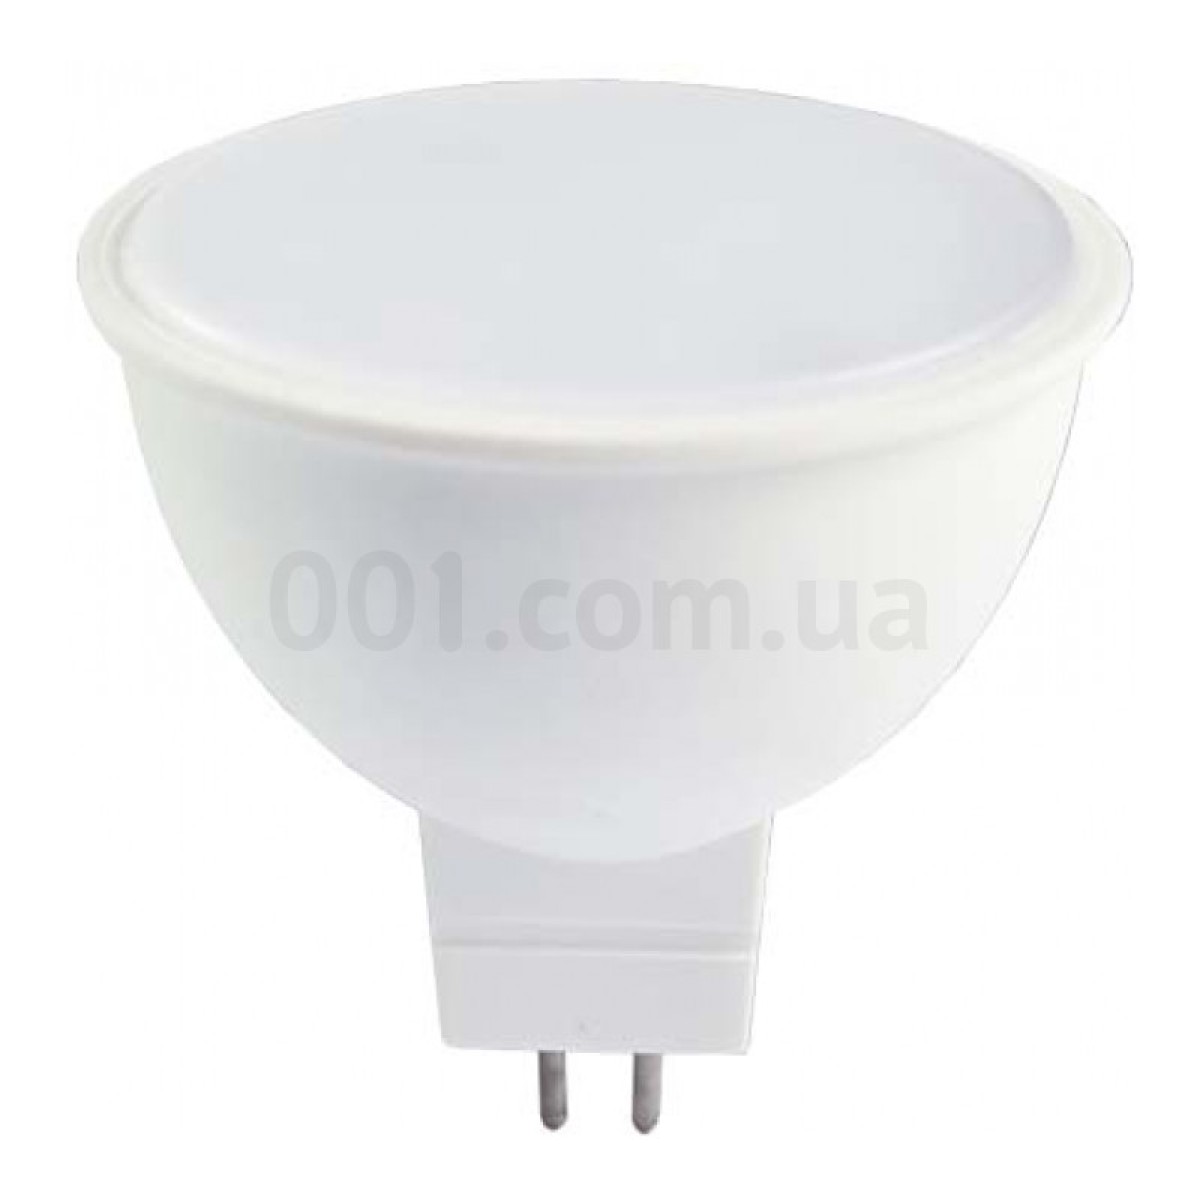 Світлодіодна лампа LB-240 MR16 4Вт 2700K G5.3, Feron 256_256.jpg